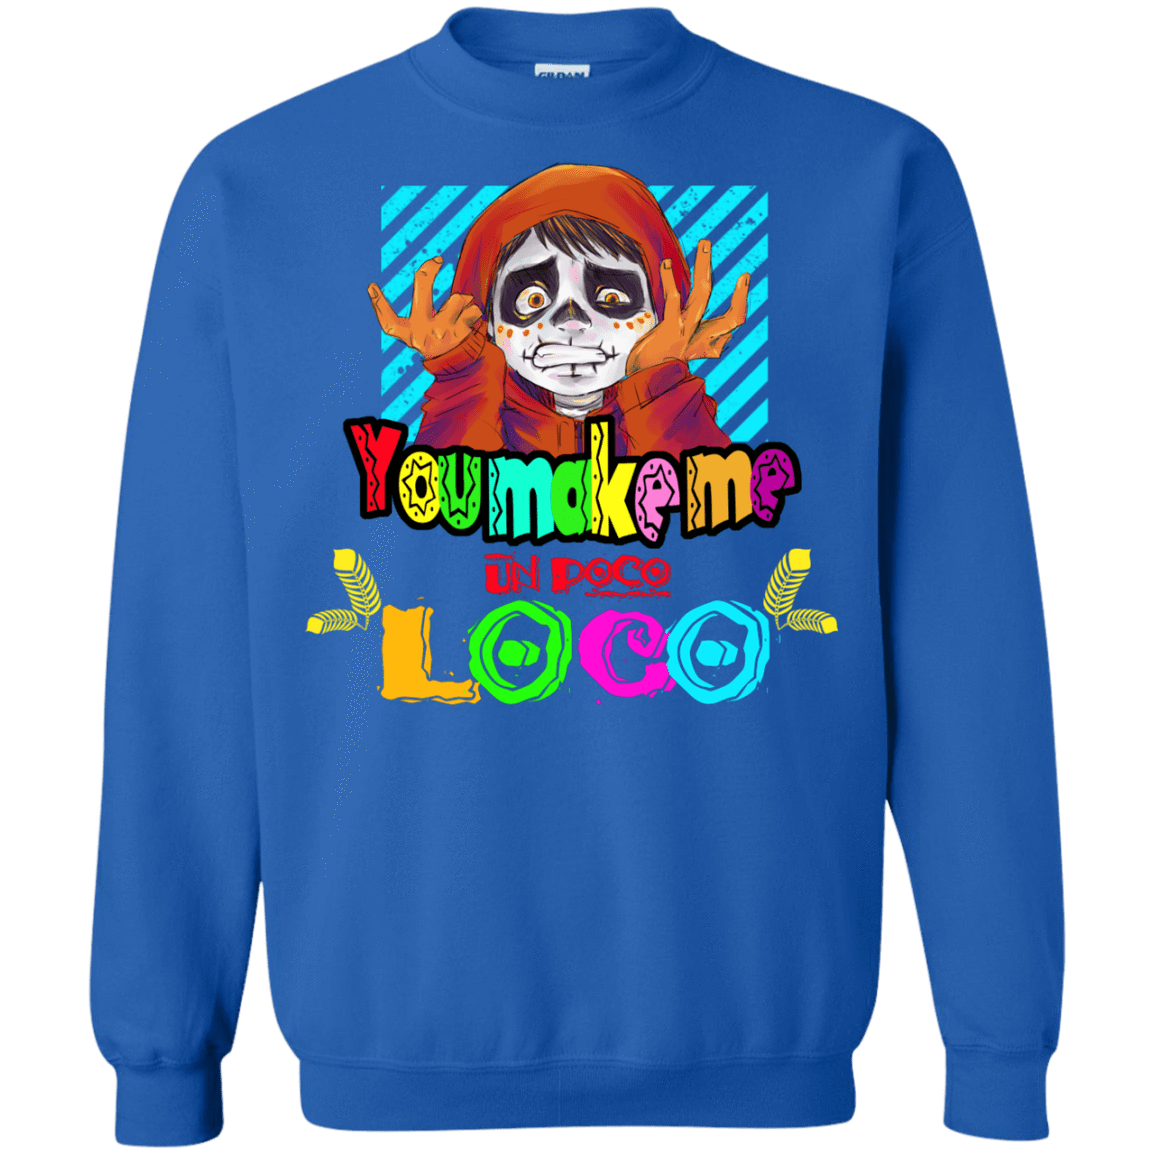 Sweatshirts Royal / S You Make Me Un Poco Loco Crewneck Sweatshirt